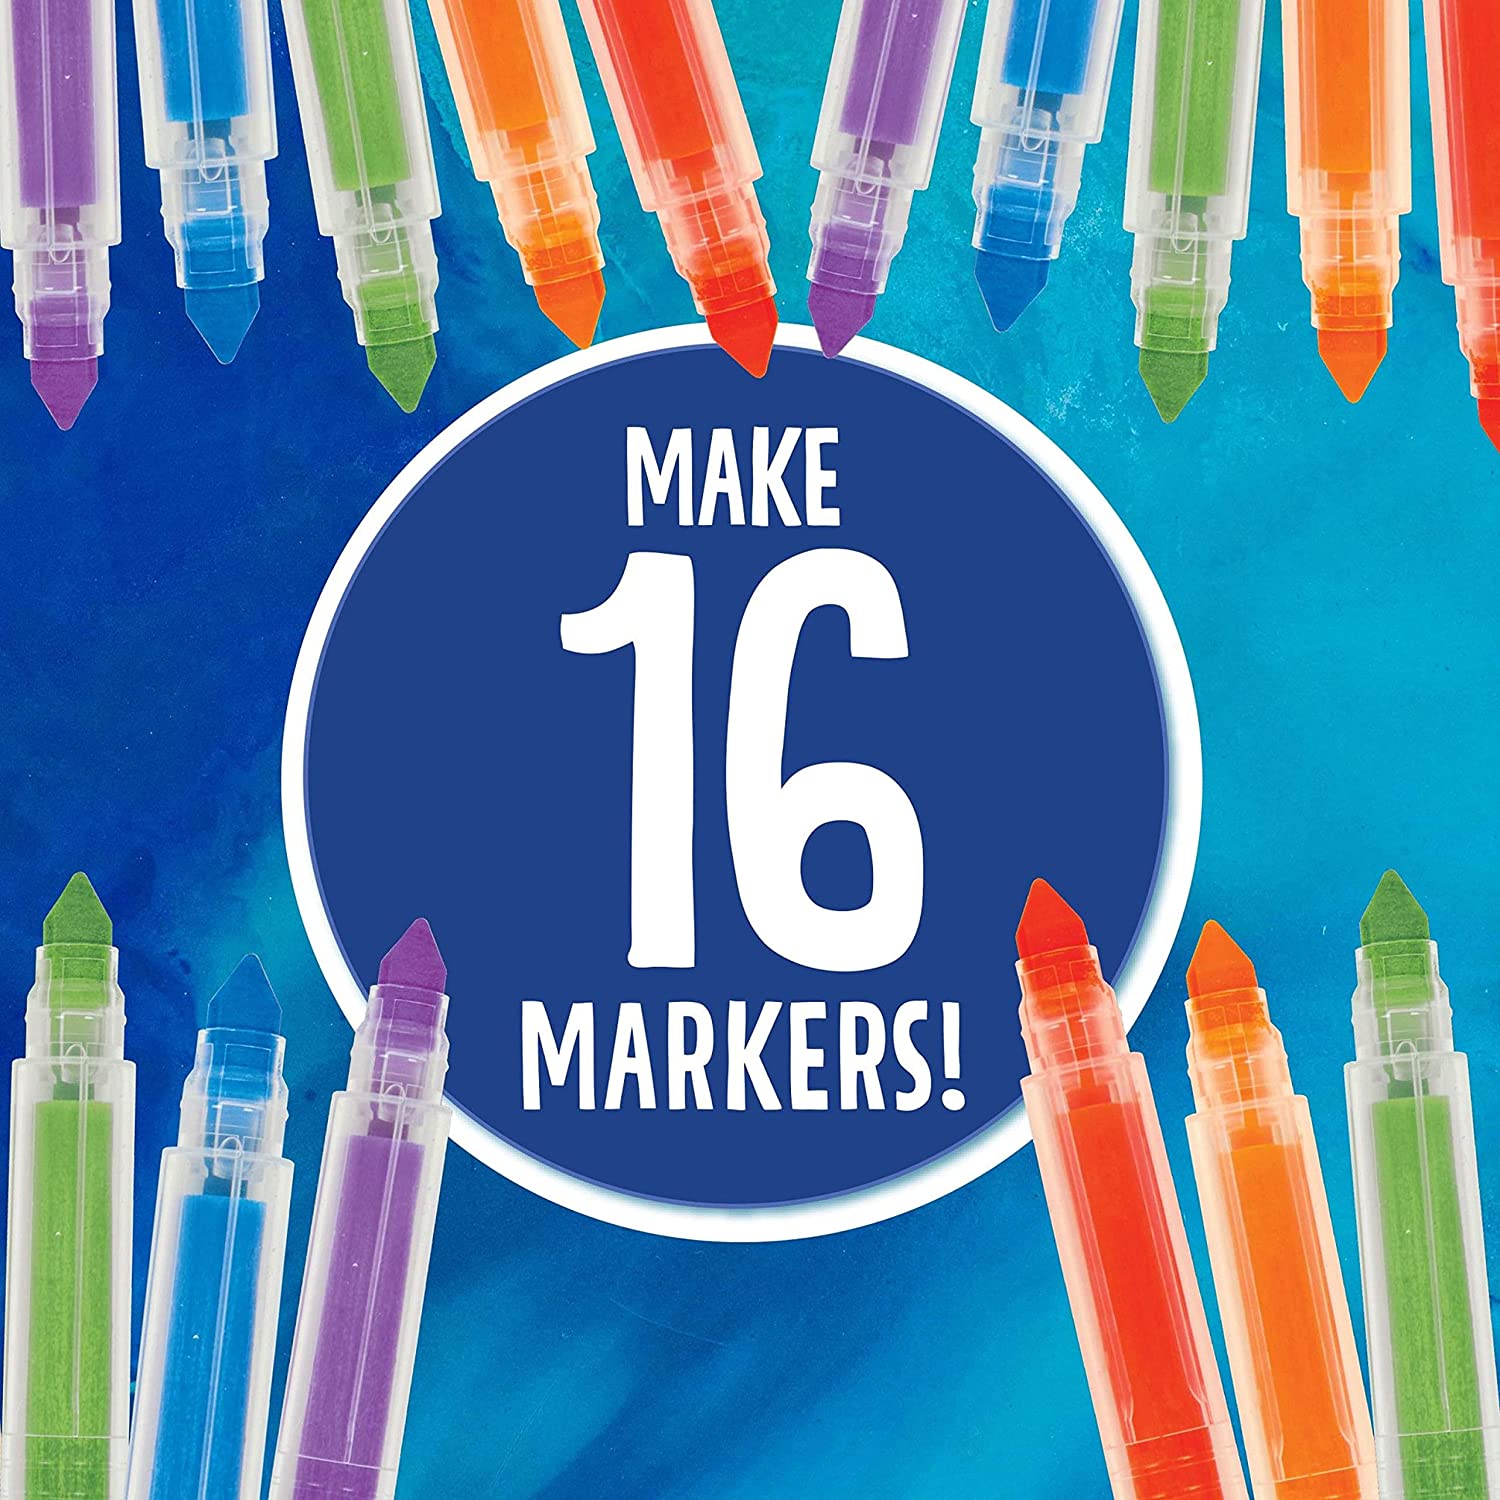 Crayola - Marker Making Machine